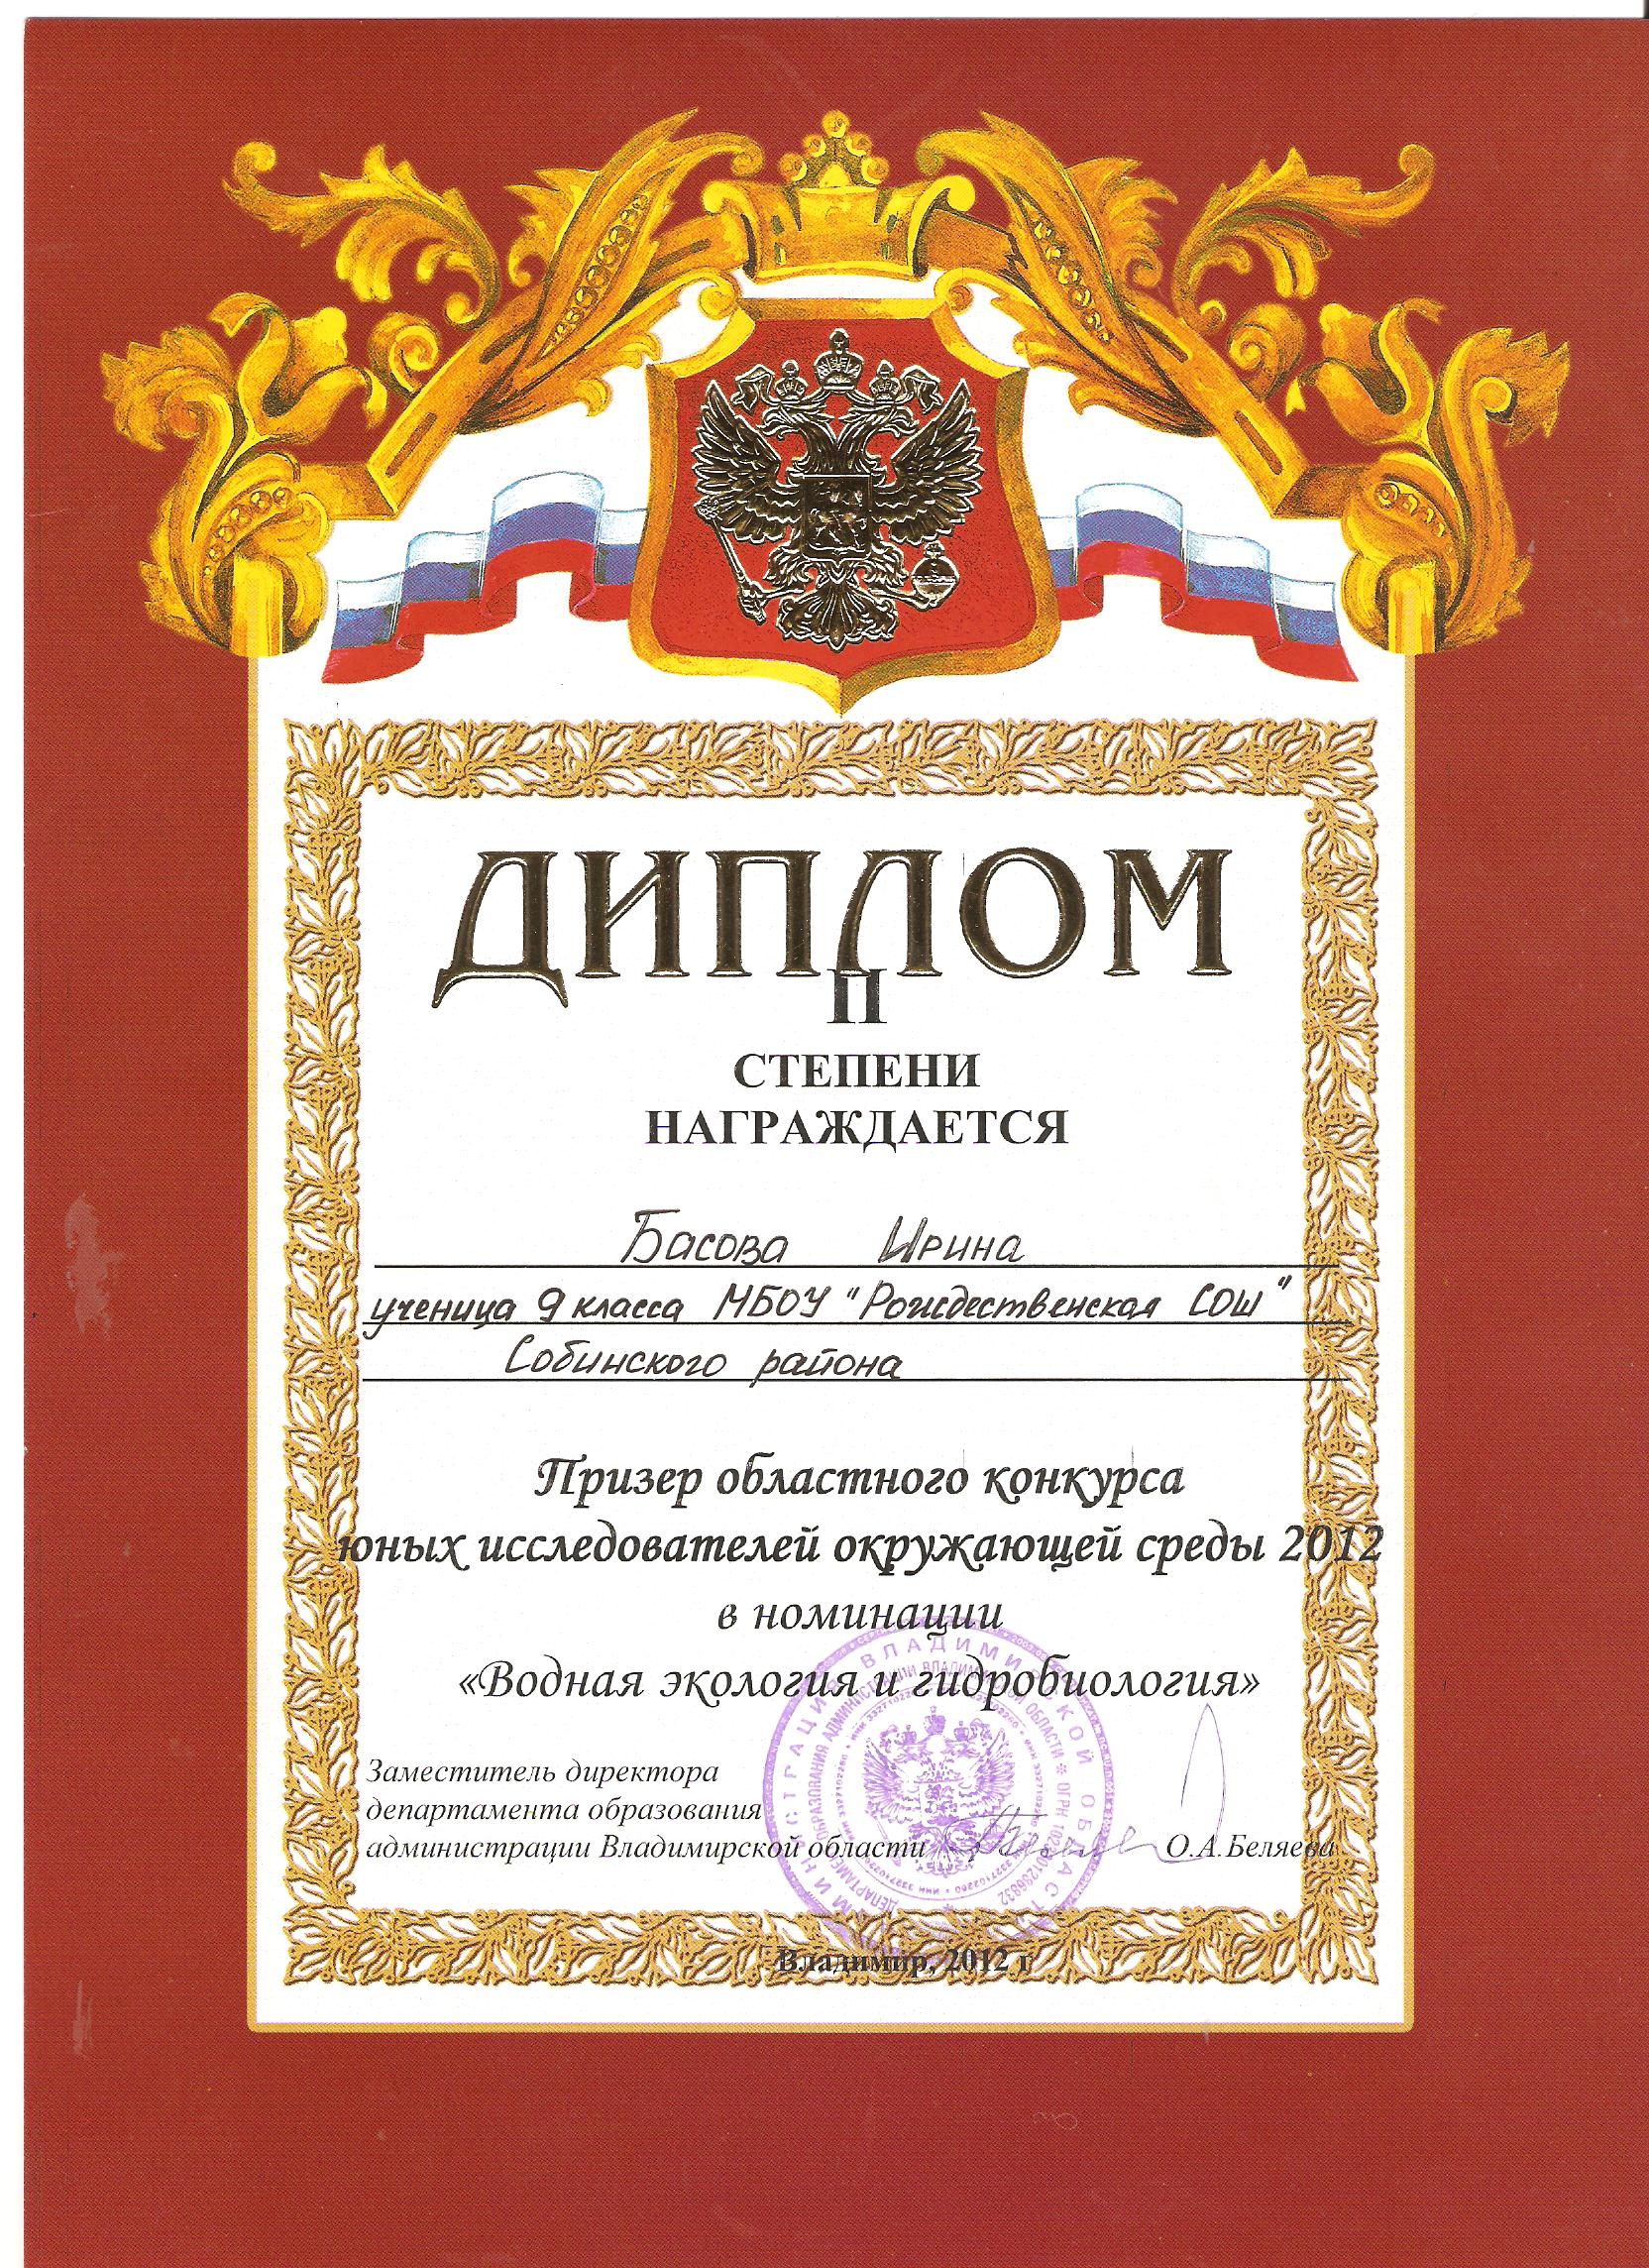 http://roshsob.ucoz.ru/gramoti-uchenik/UIOS/diplom_2m_obl_konkurs_issled_2012_basova_i..jpg